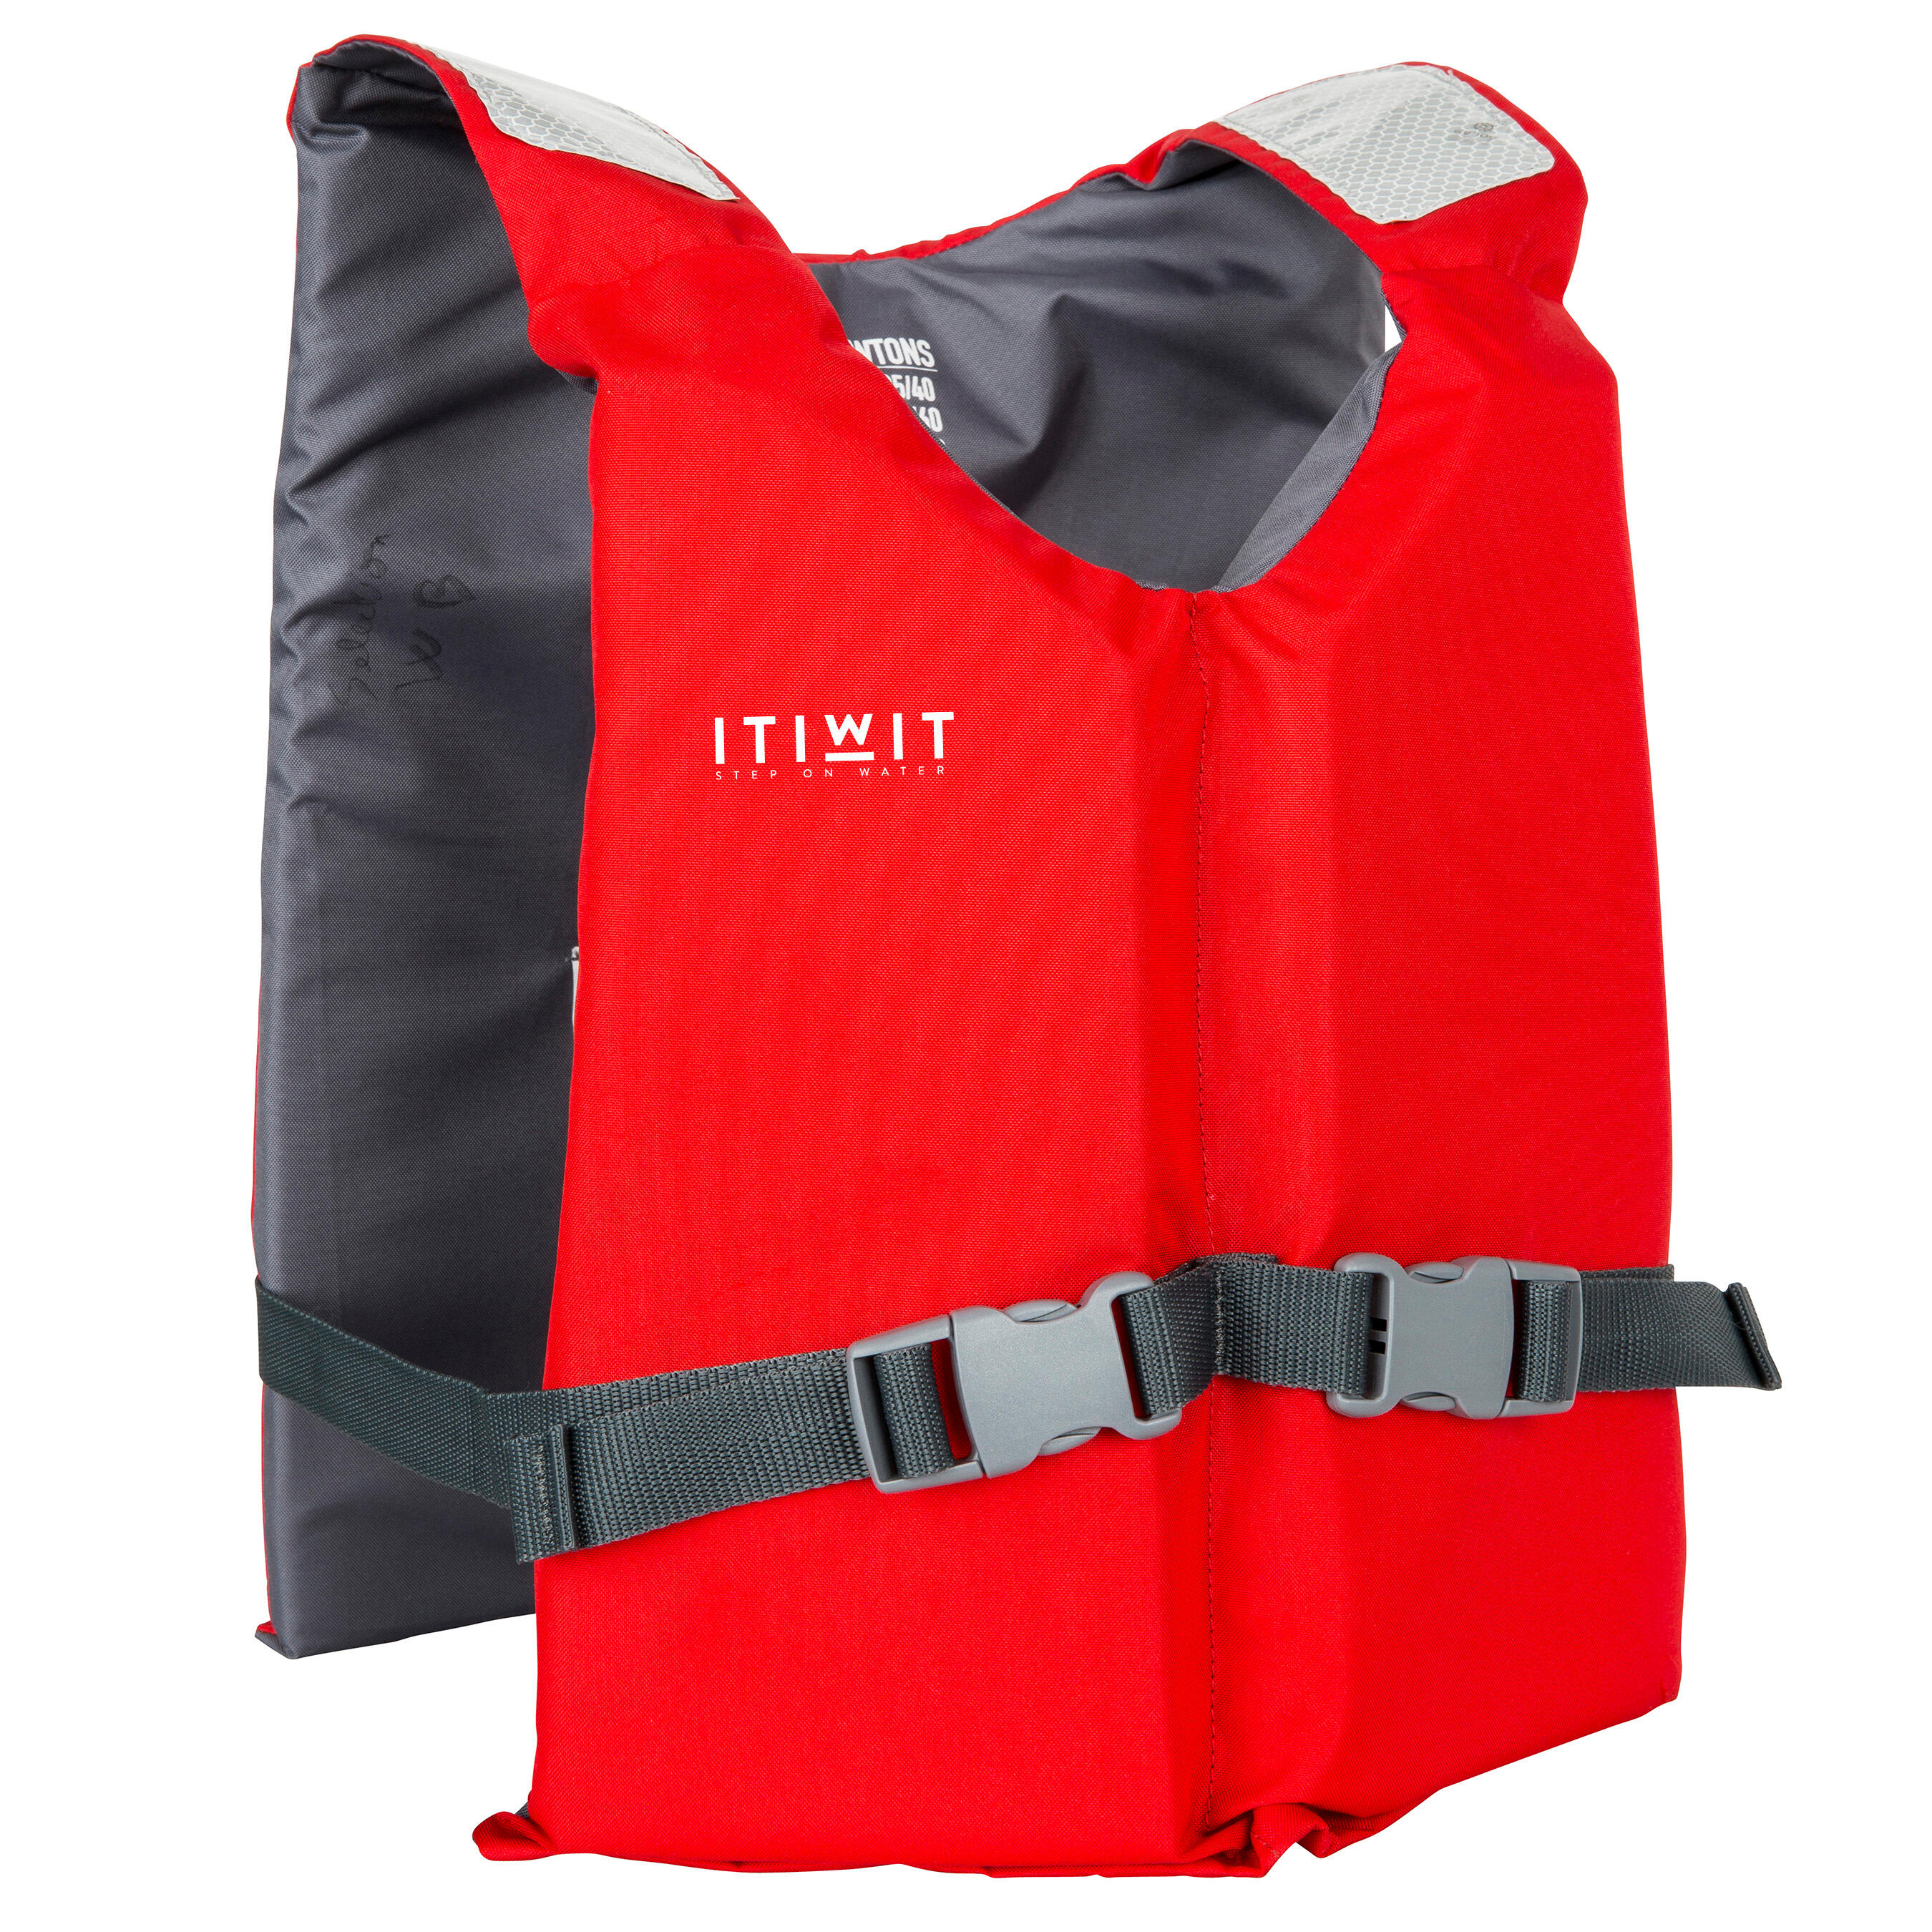 itiwit life jacket